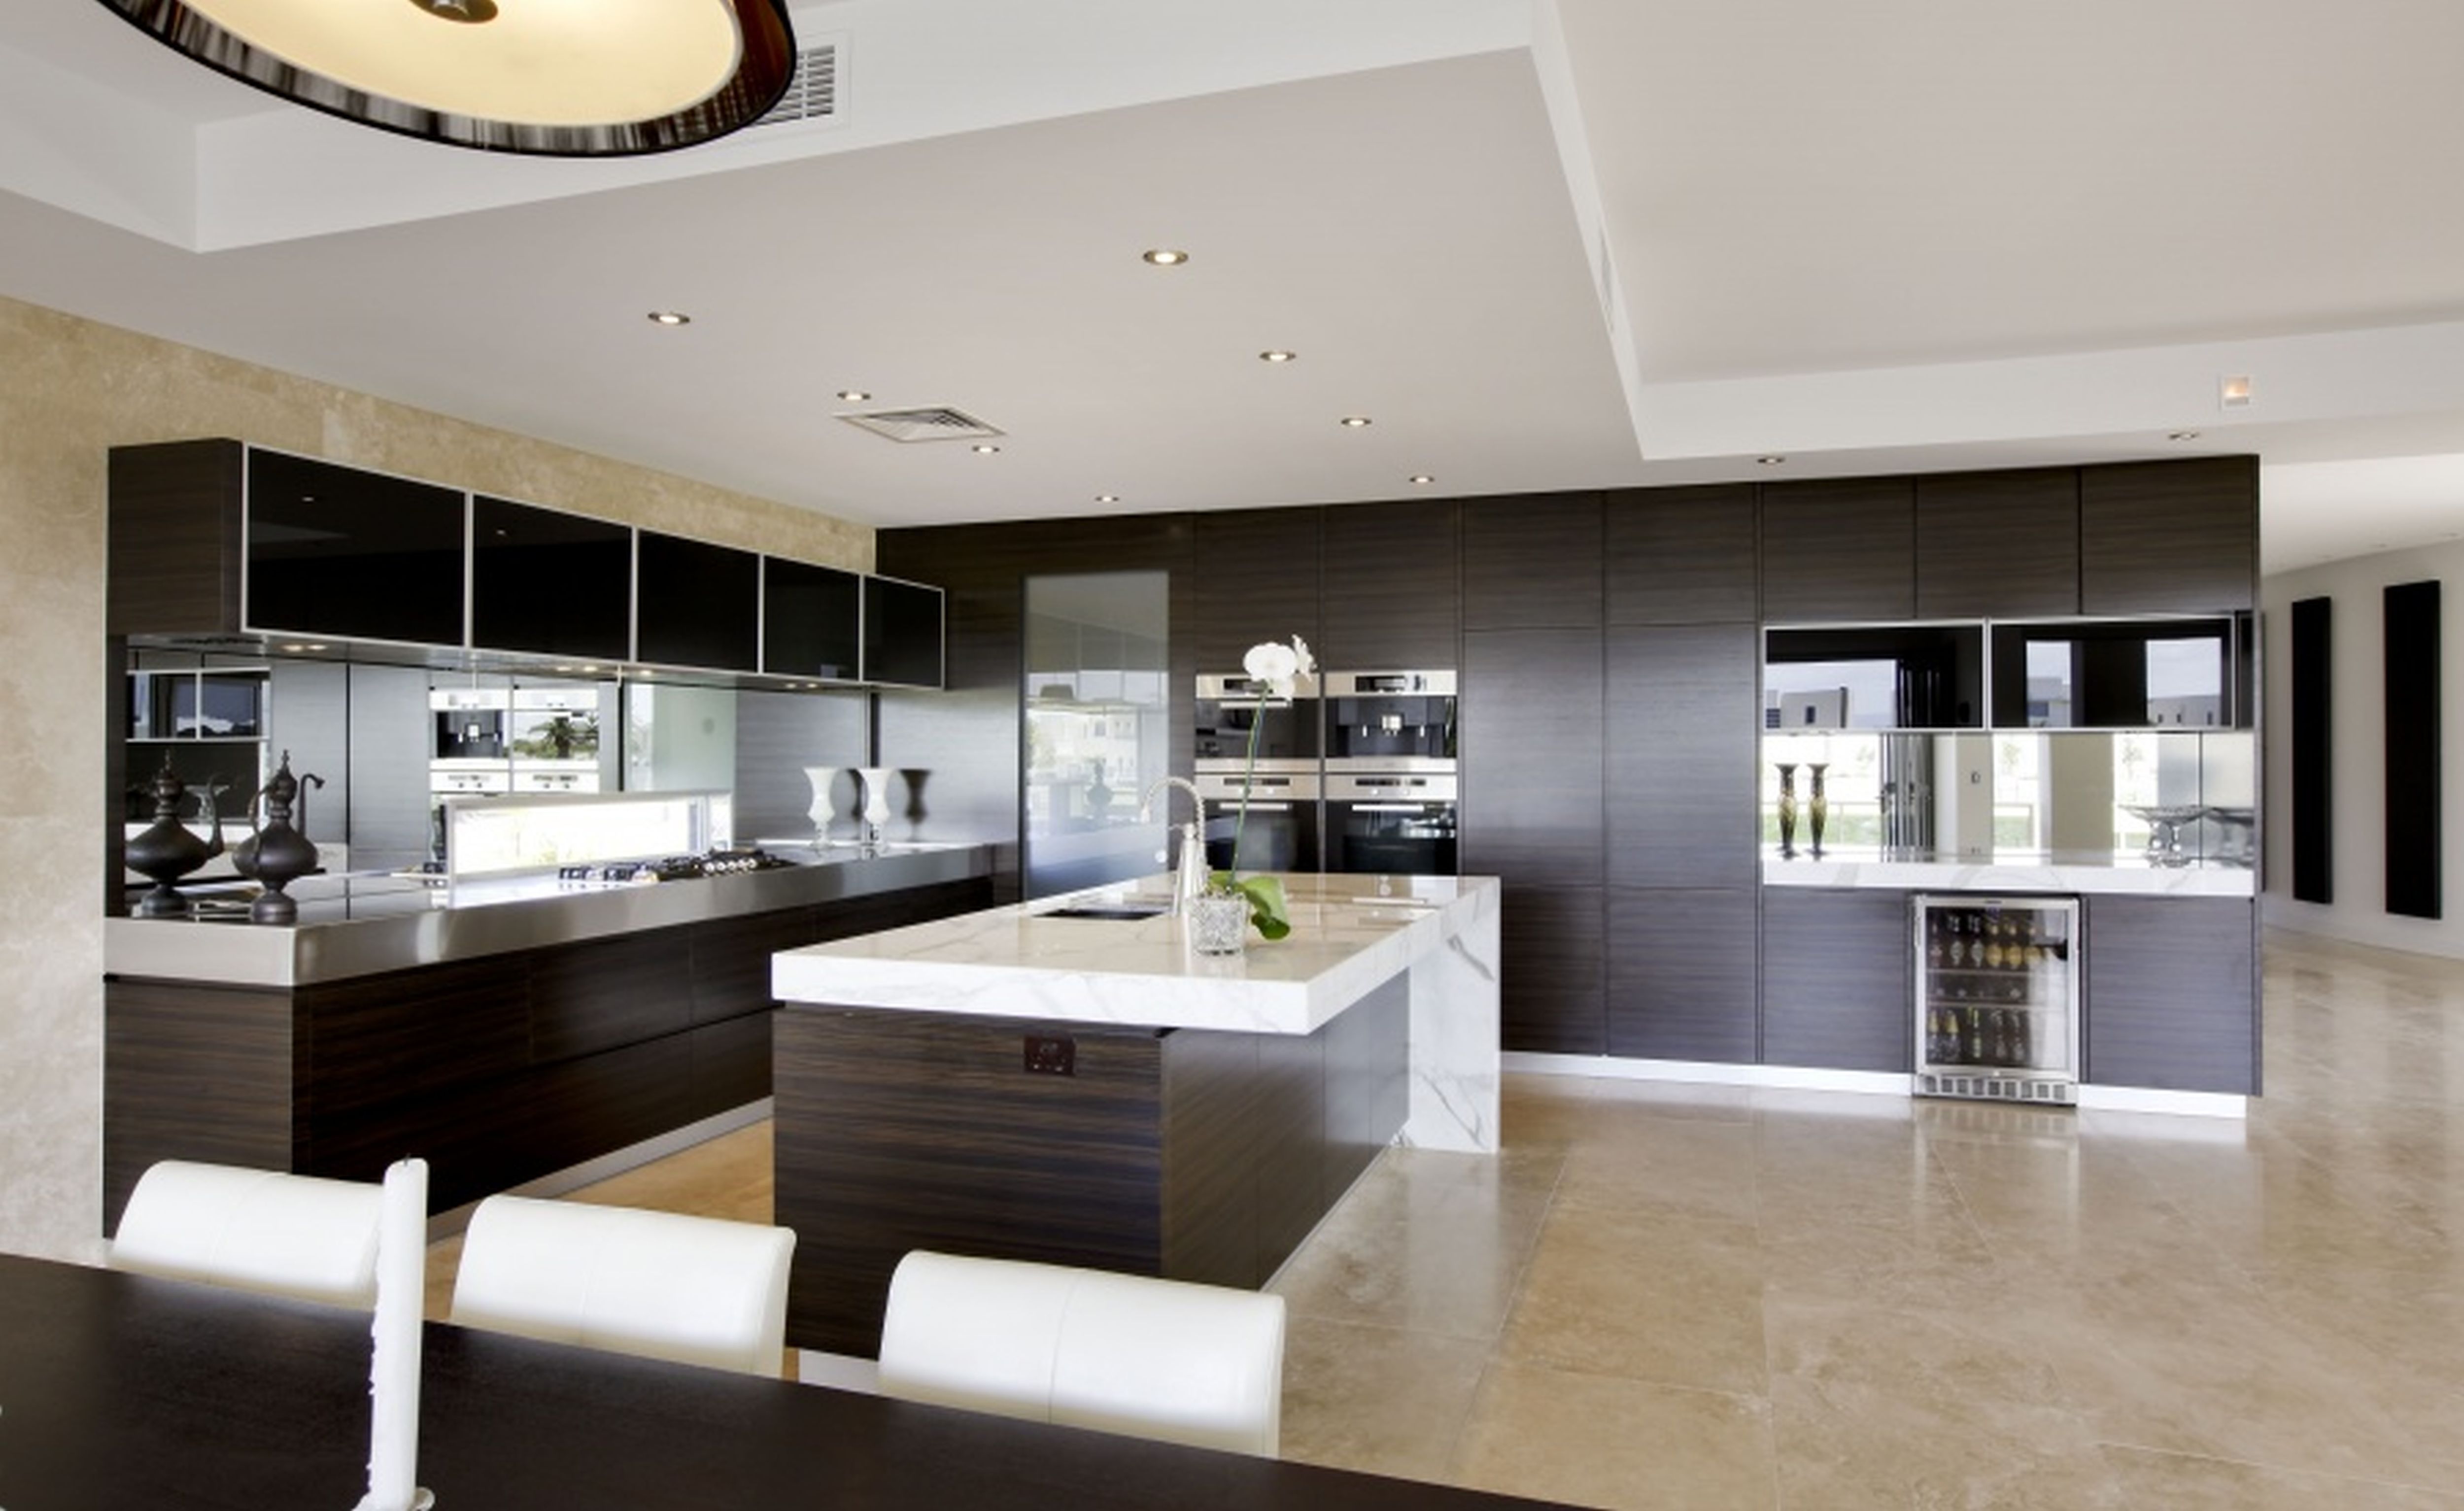 کابینت مدرن مناسب چه آشپزخانه هایی است؟